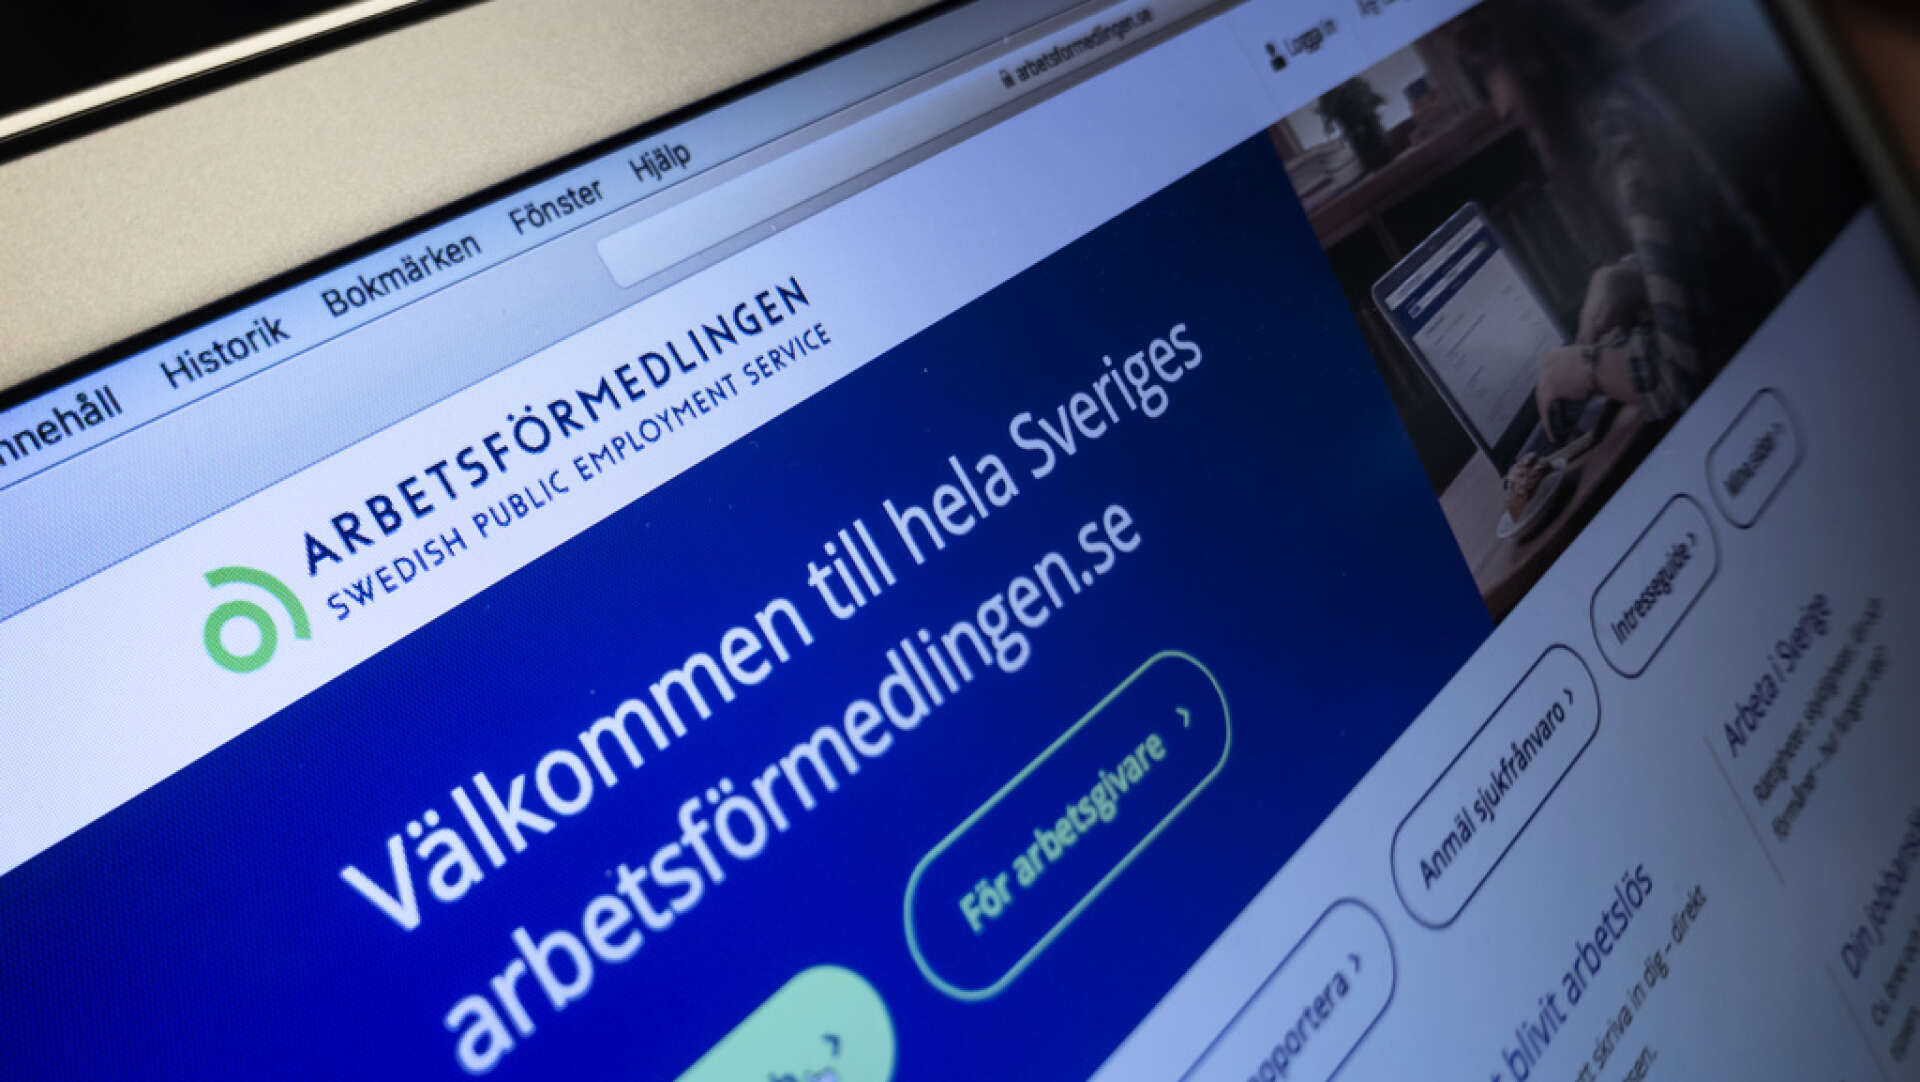 Det kan bli svårt för många som nu blir arbetslösa att hitta nytt jobb, varnar Svenskt Näringsliv. Arkivbild.